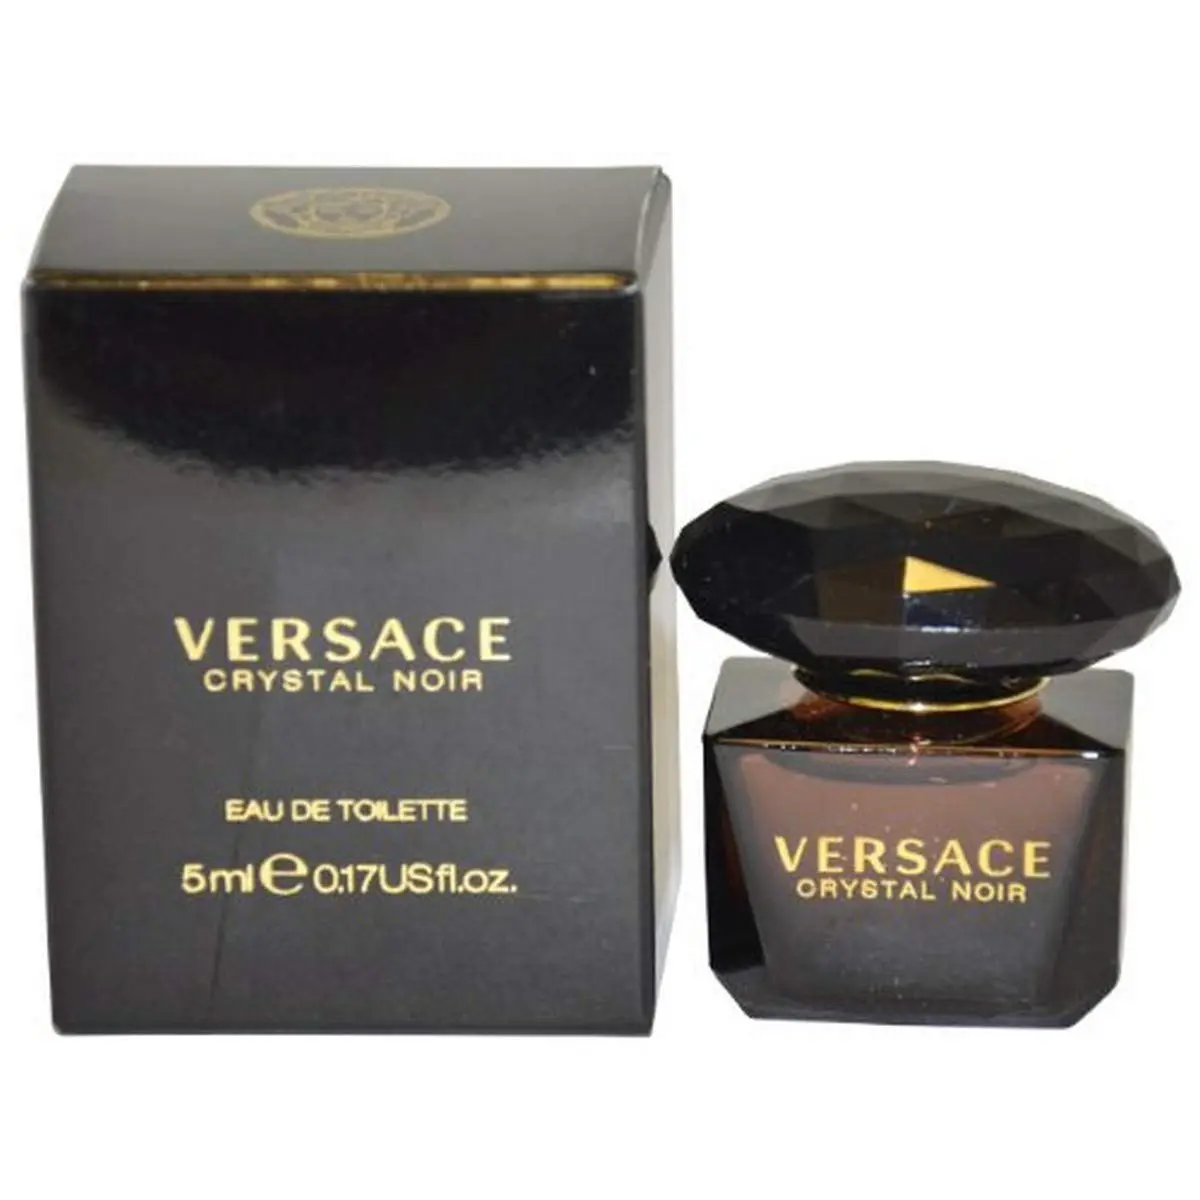 perfume versace de mujer - Qué olor tiene el perfume Versace de mujer